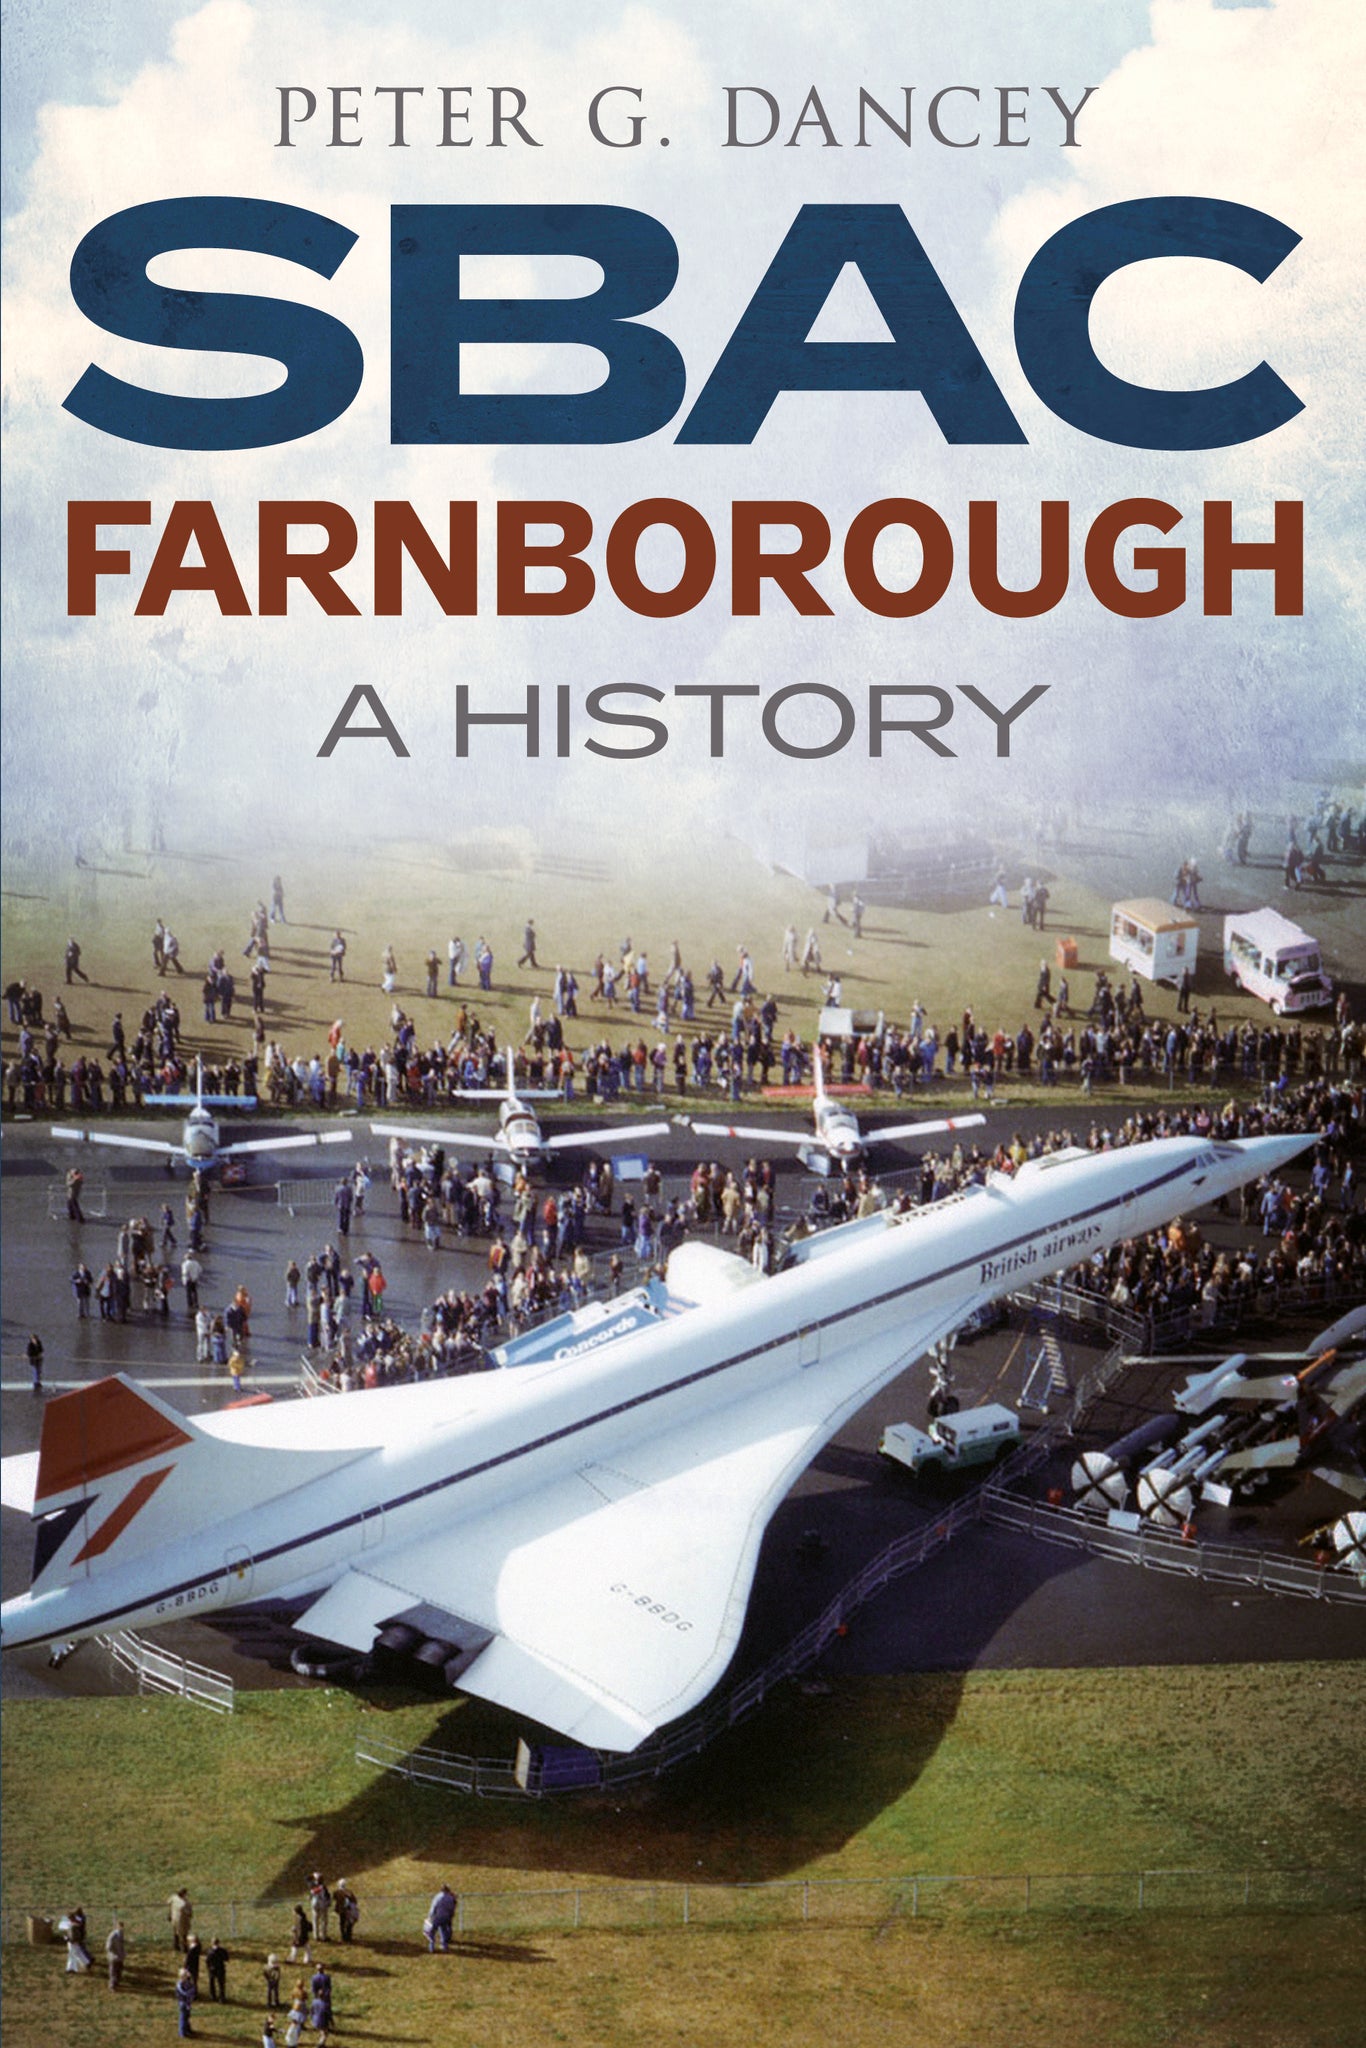 SBAC Farnborough: A History